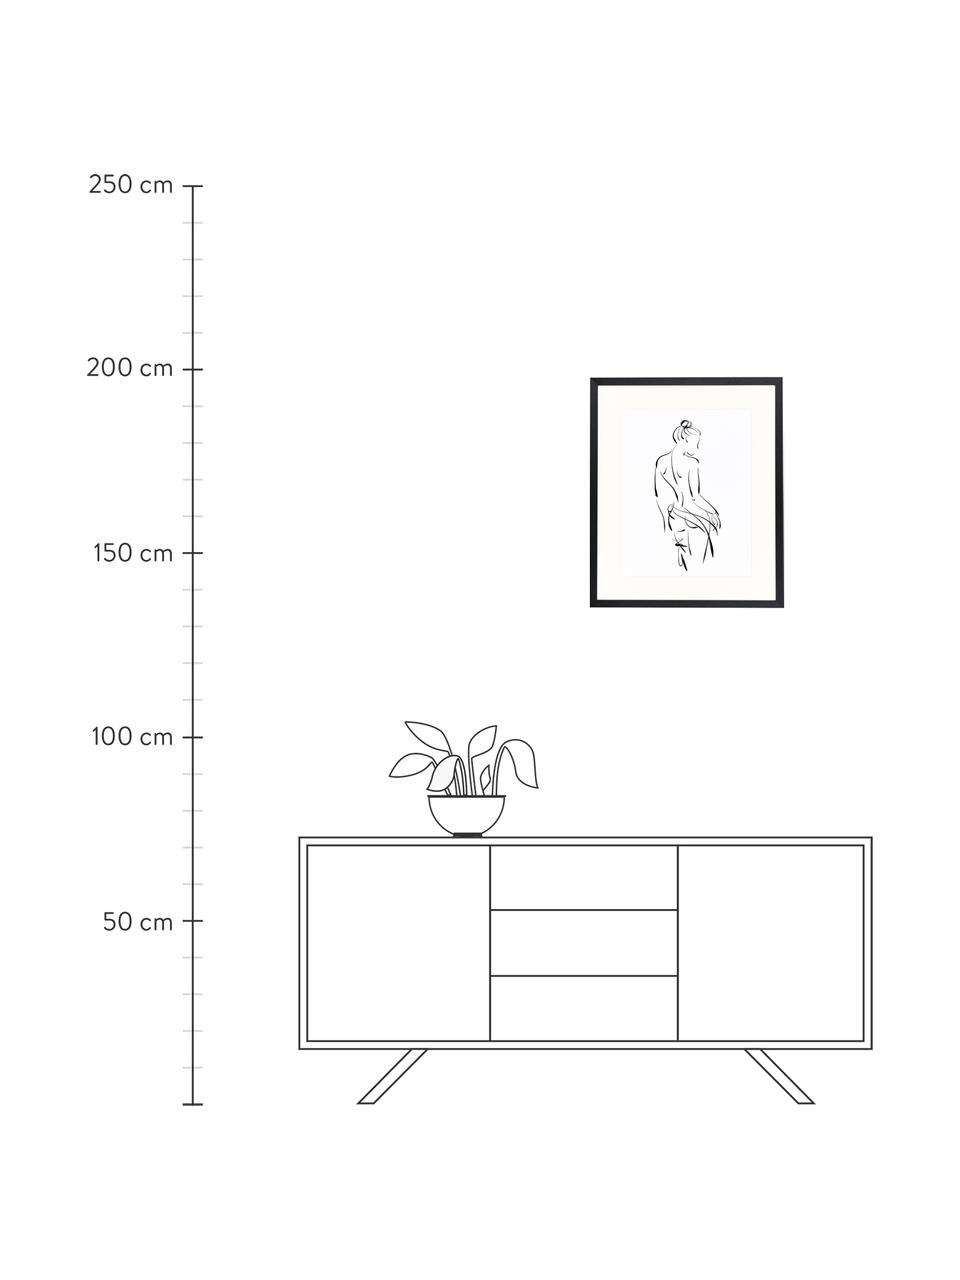 Gerahmter Digitaldruck Naked Woman, Bild: Digitaldruck auf Papier, , Rahmen: Holz, lackiert, Front: Plexiglas, Schwarz, Weiß, B 53 x H 63 cm